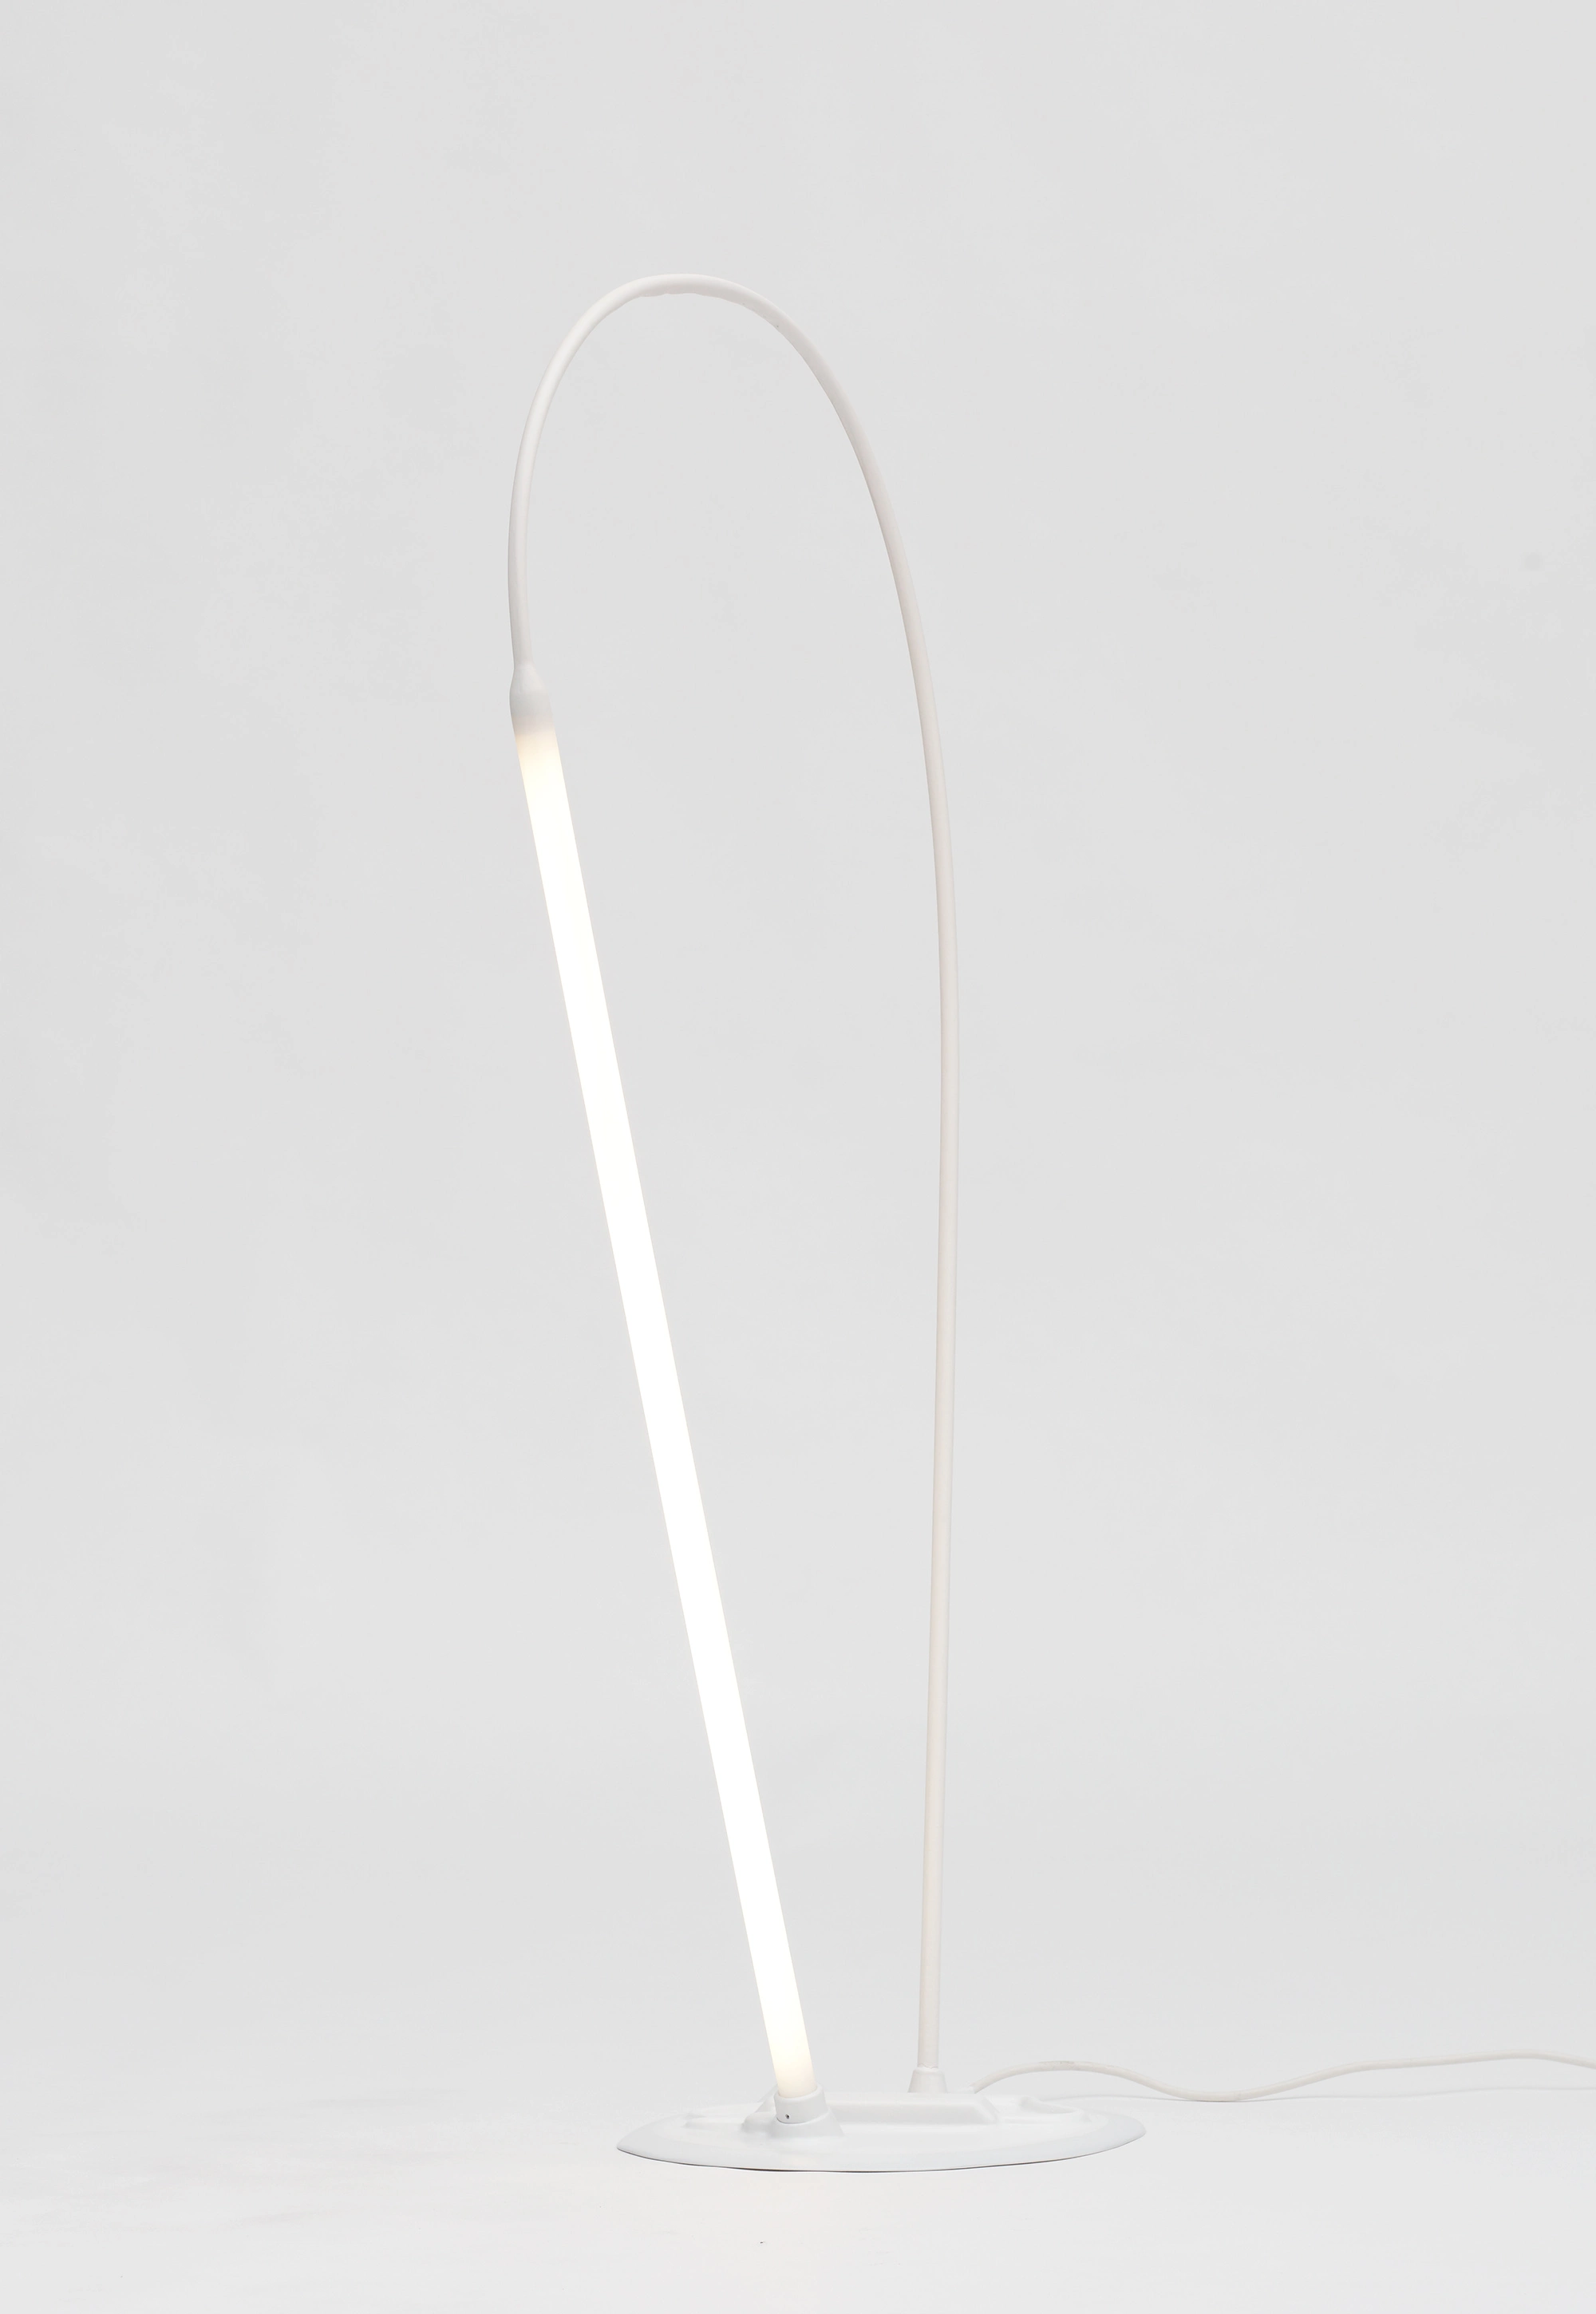 Frozen Bended - Studio Wieki Somers - Floor light - Galerie kreo